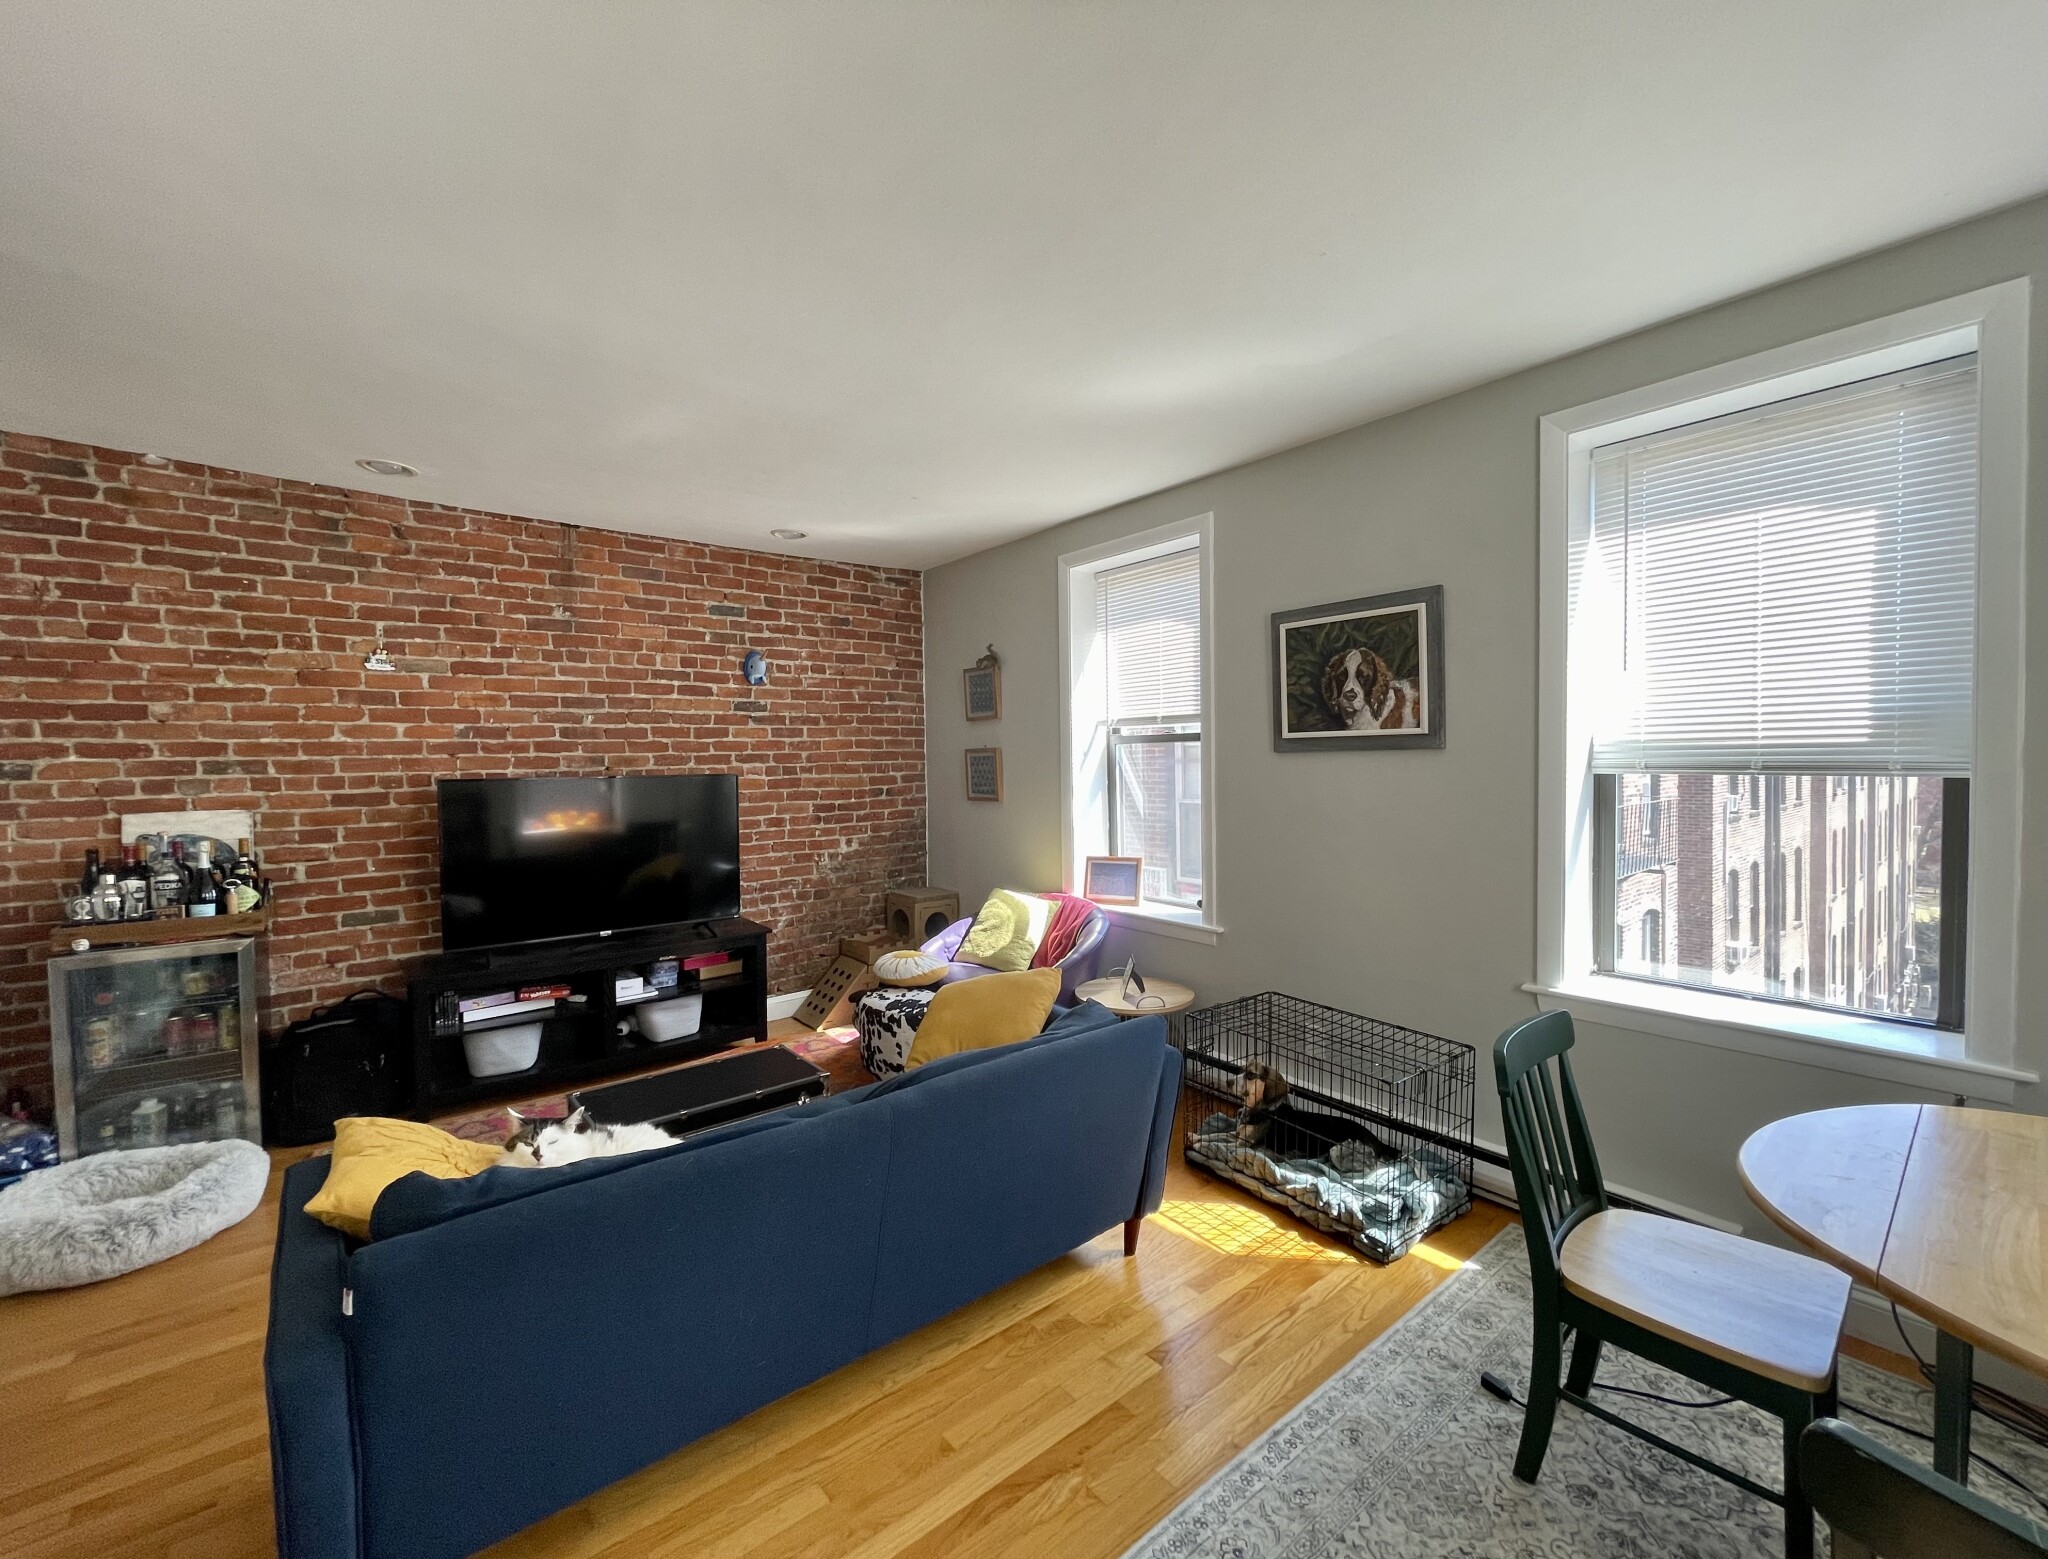 Photos of apartment on Boylston St.,Boston MA 02116